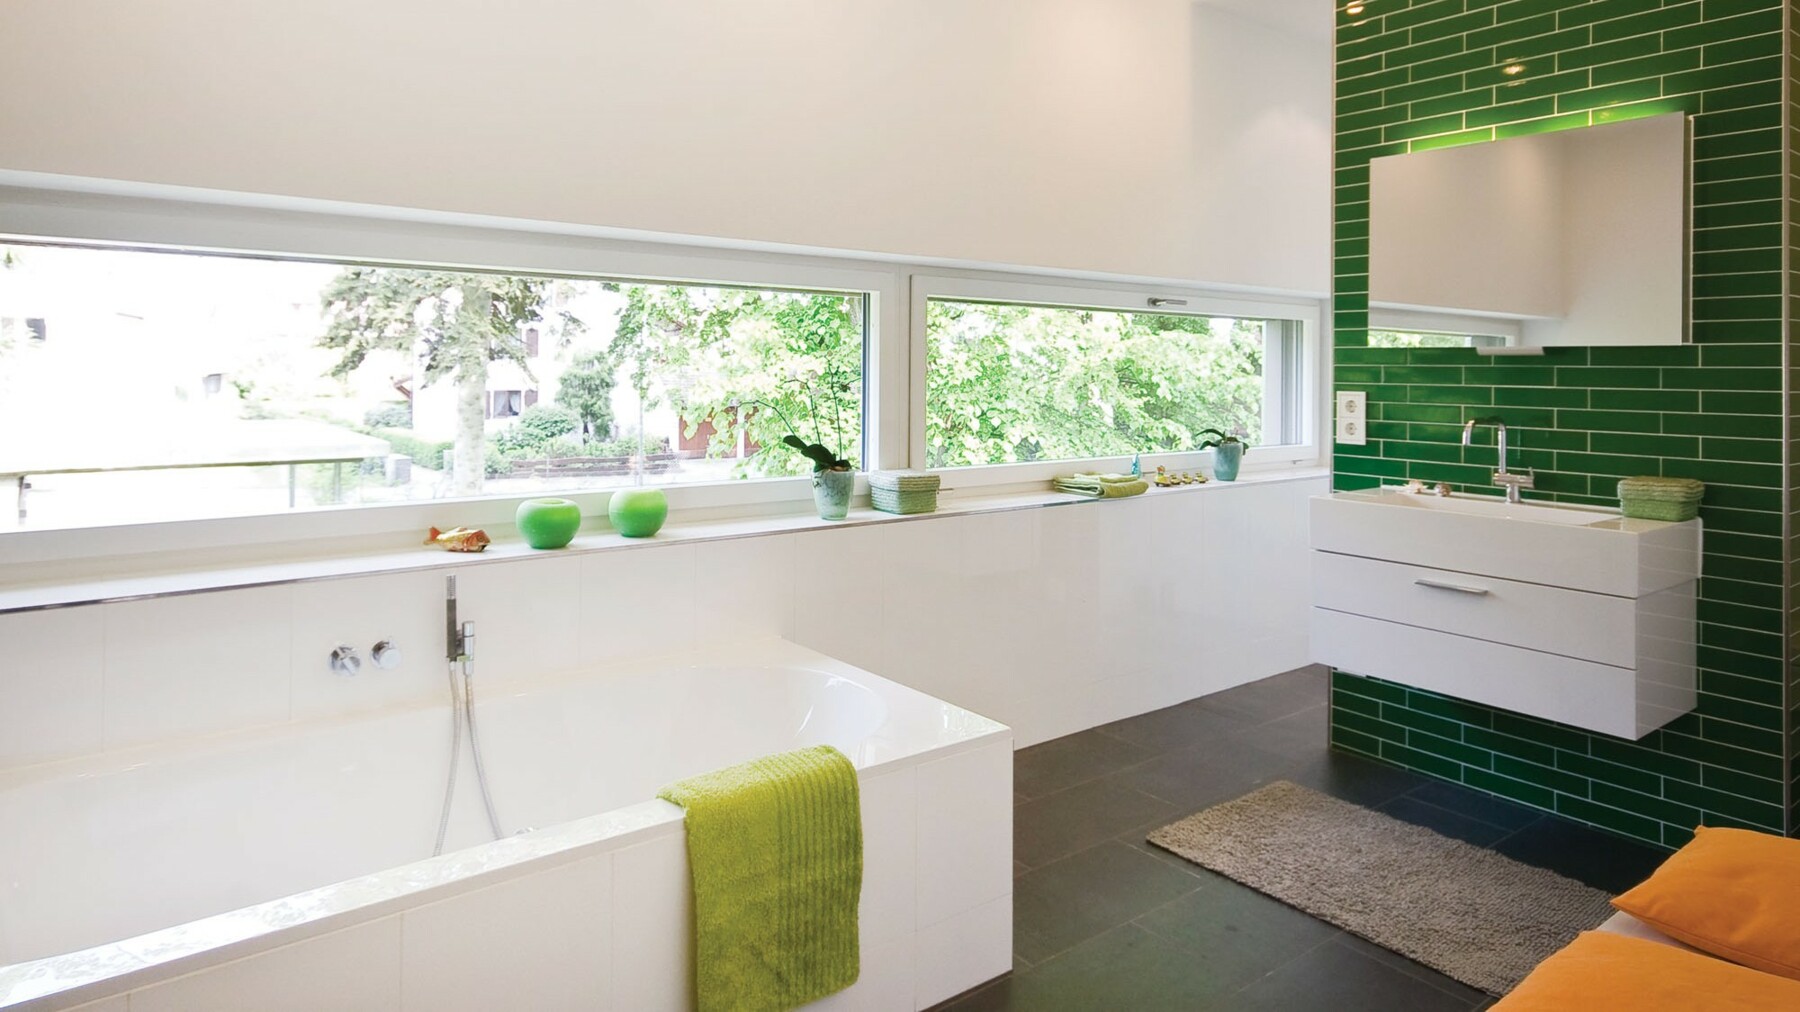 Im Badezimmer sorgt eine grün gekachelte Wand für einen besonderen Farbakzent und durch ein lang gezogenes Fensterband fällt viel Licht in den Raum.